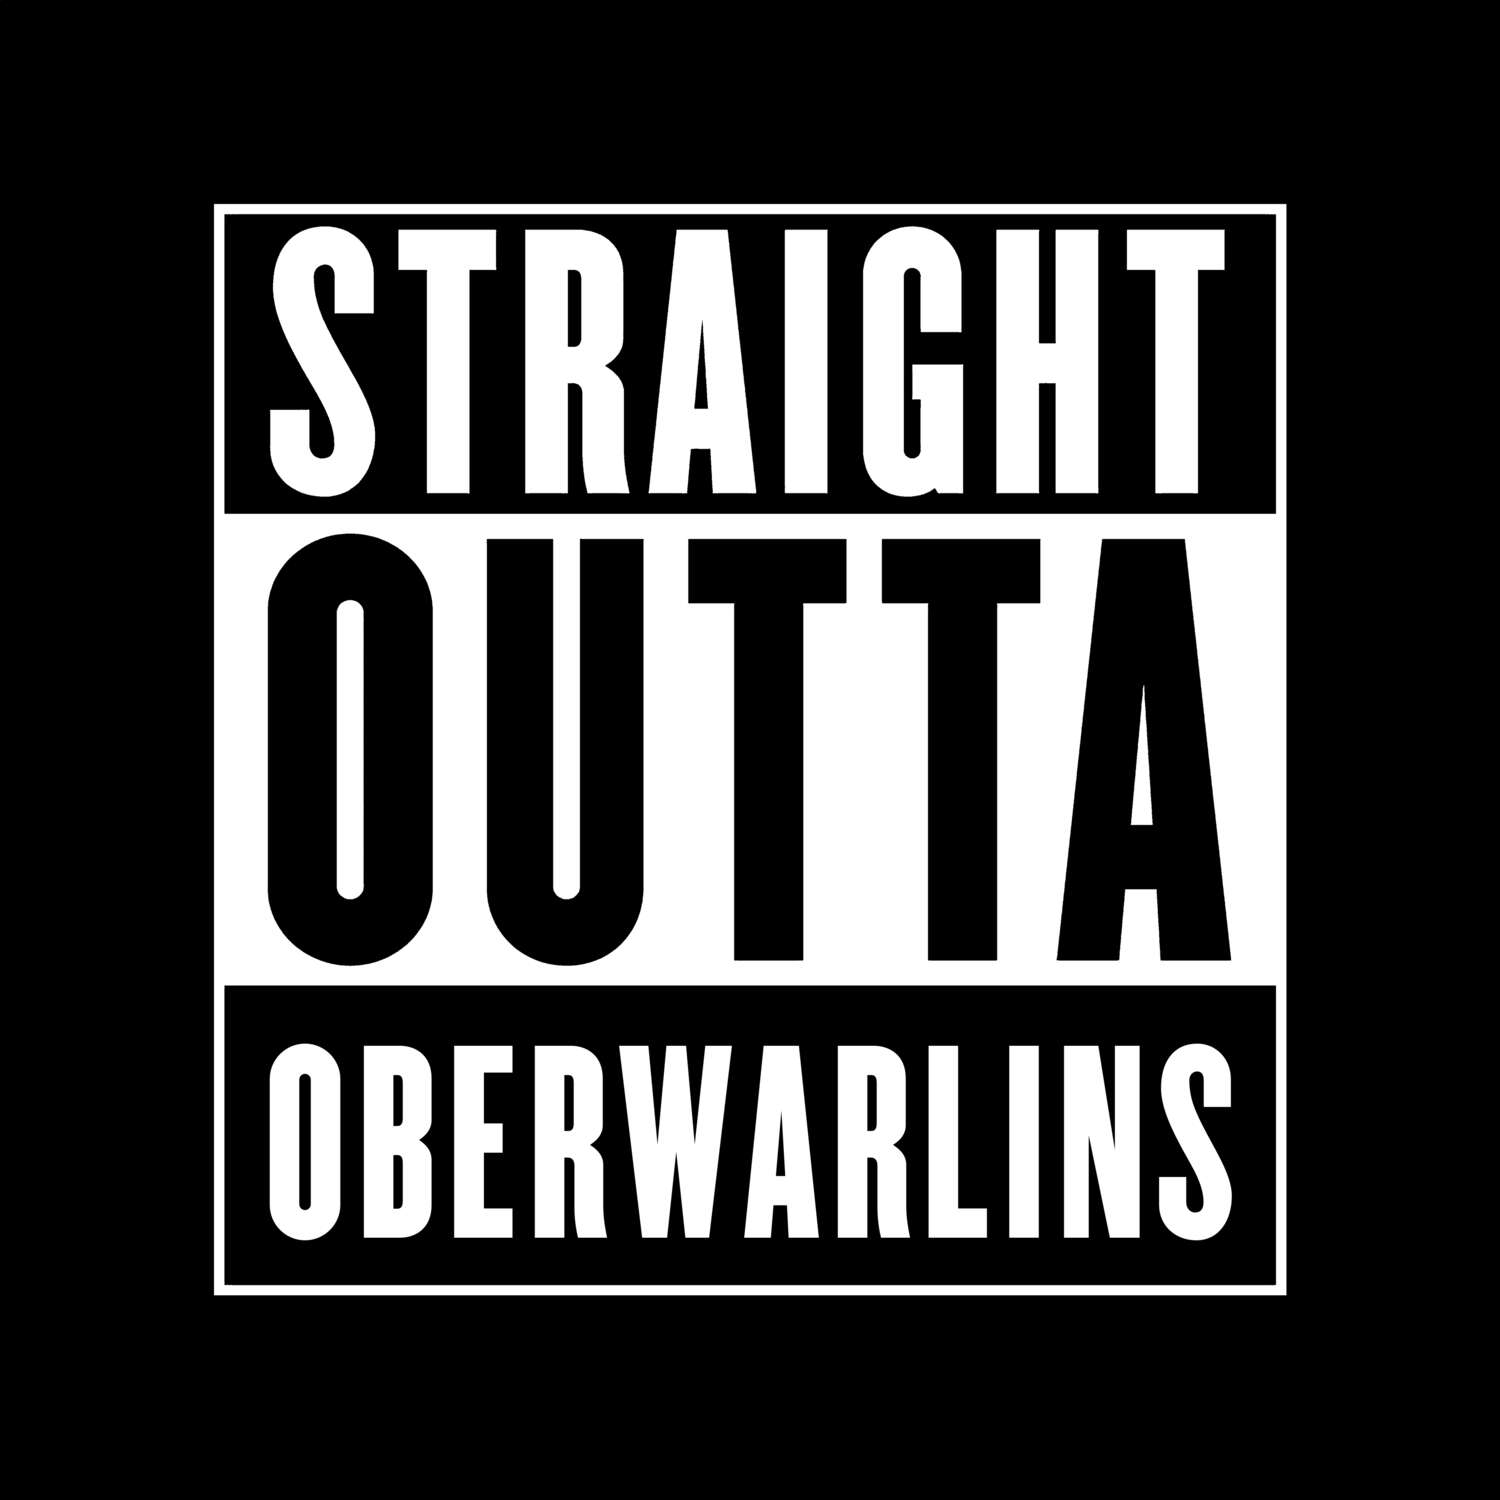 Oberwarlins T-Shirt »Straight Outta«